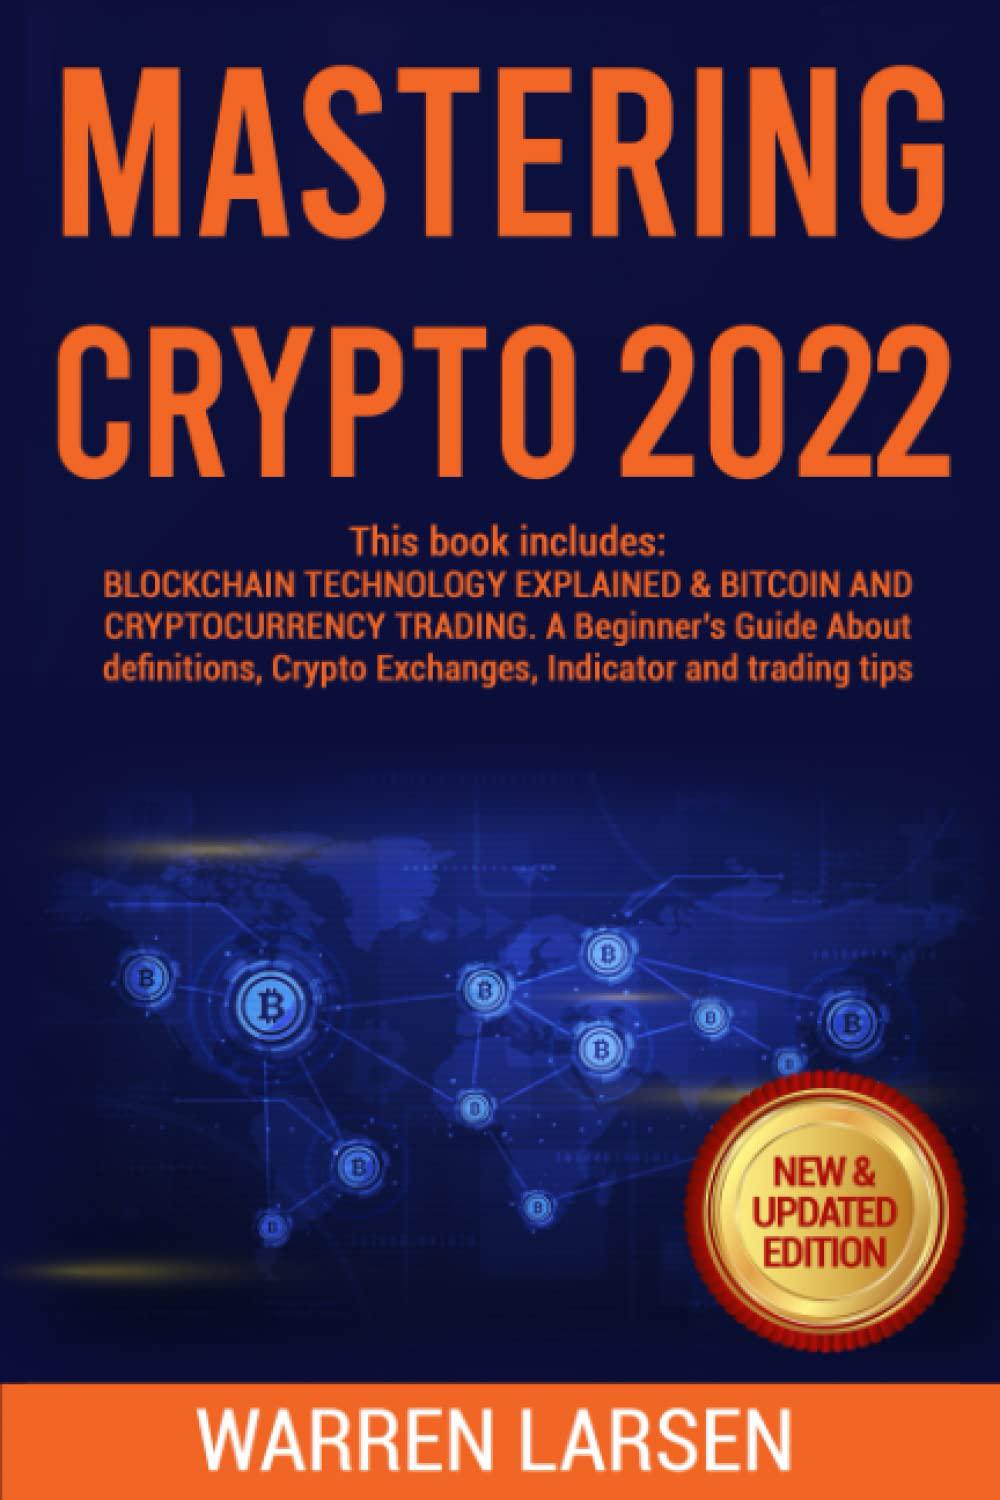 Melhores livros sobre blockchain que você pode ler em 2022 Melhores livros sobre blockchain que você pode ler em 2022 